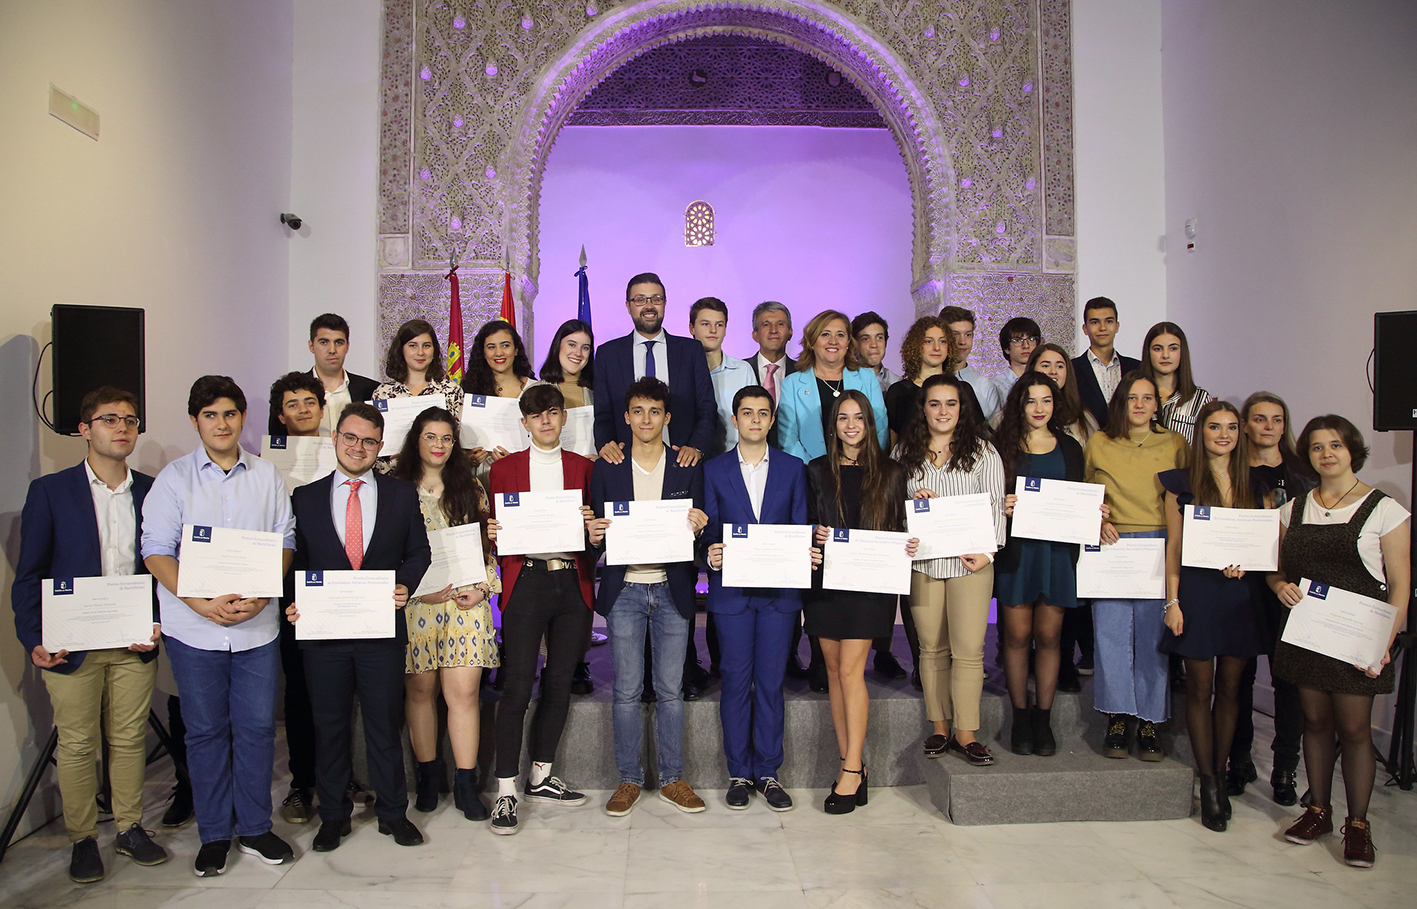 Los 34 alumnos premiados, junto a la consejera de Educación, Rosana Rodríguez; y el vicealdalde de Toledo, José Pablo Sabrido.